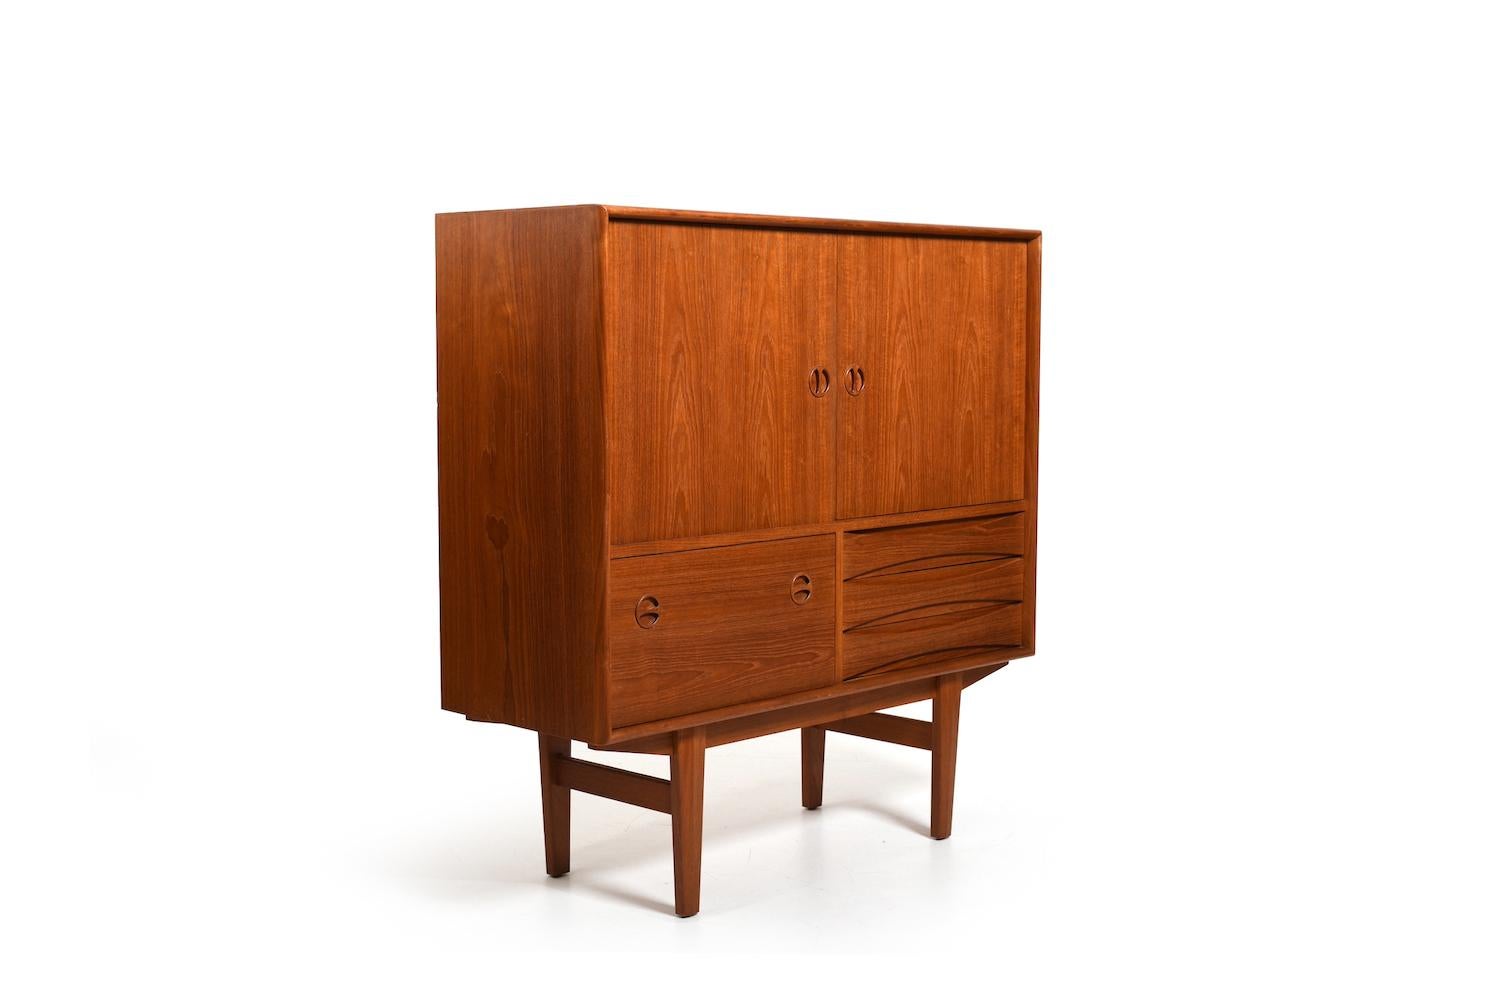 Elegant meuble danois en teck avec tiroirs et portes. Nous pensons qu'il s'agit de Niels Clausen pour A.I.C. Møbler Danemark. Souvent décrit comme Arne Vodder. C'est la même chose, de très bonne qualité. A.I.C. c. 1960.